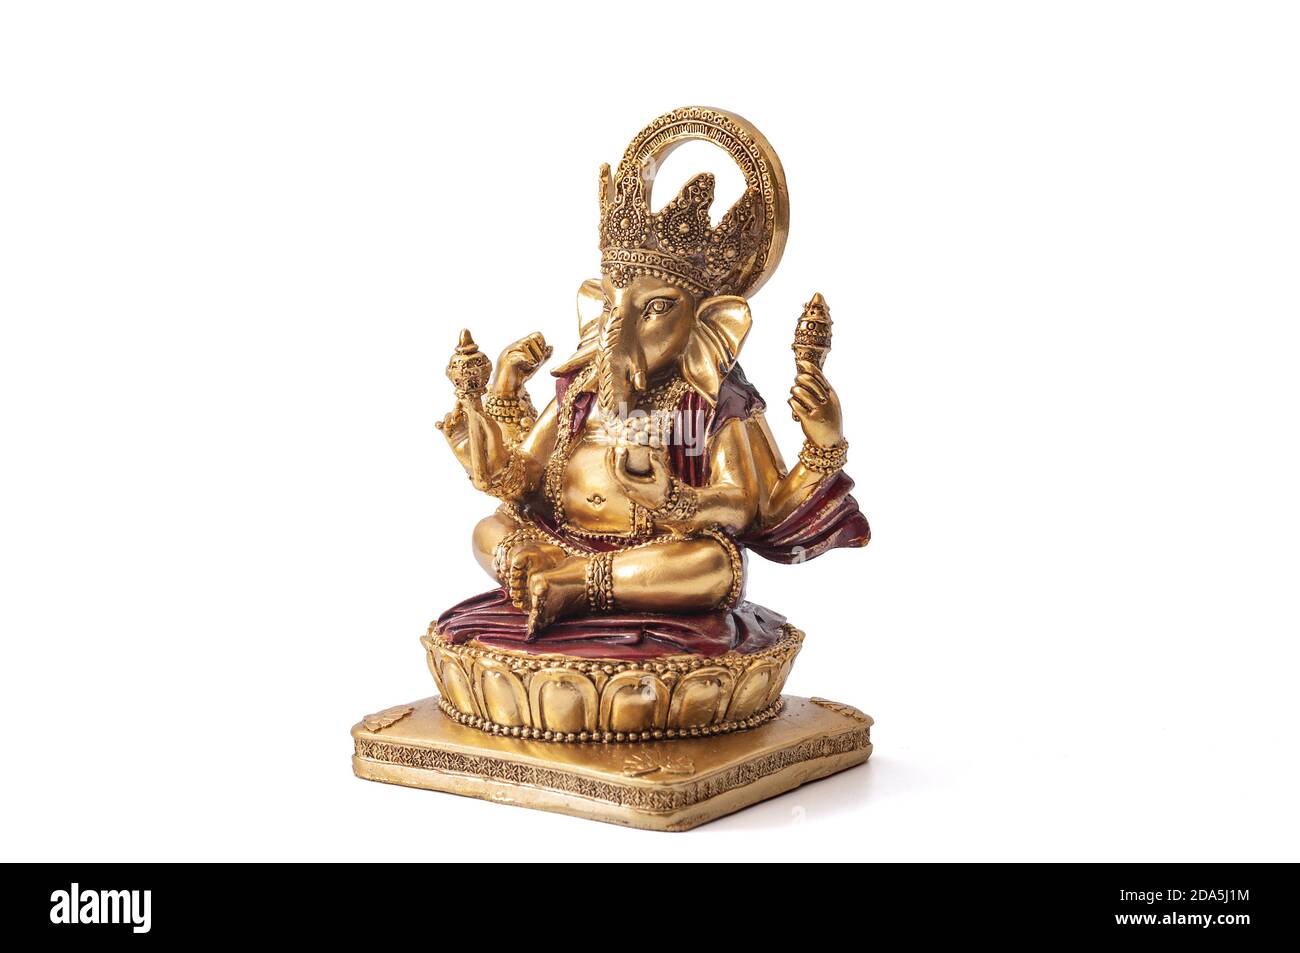 Bonne idée de Diwali, bénis divin et harmonie spirituelle avec Ganesh le Dieu de demi-éléphant hindou des débuts dans la méditation posent isolé Banque D'Images